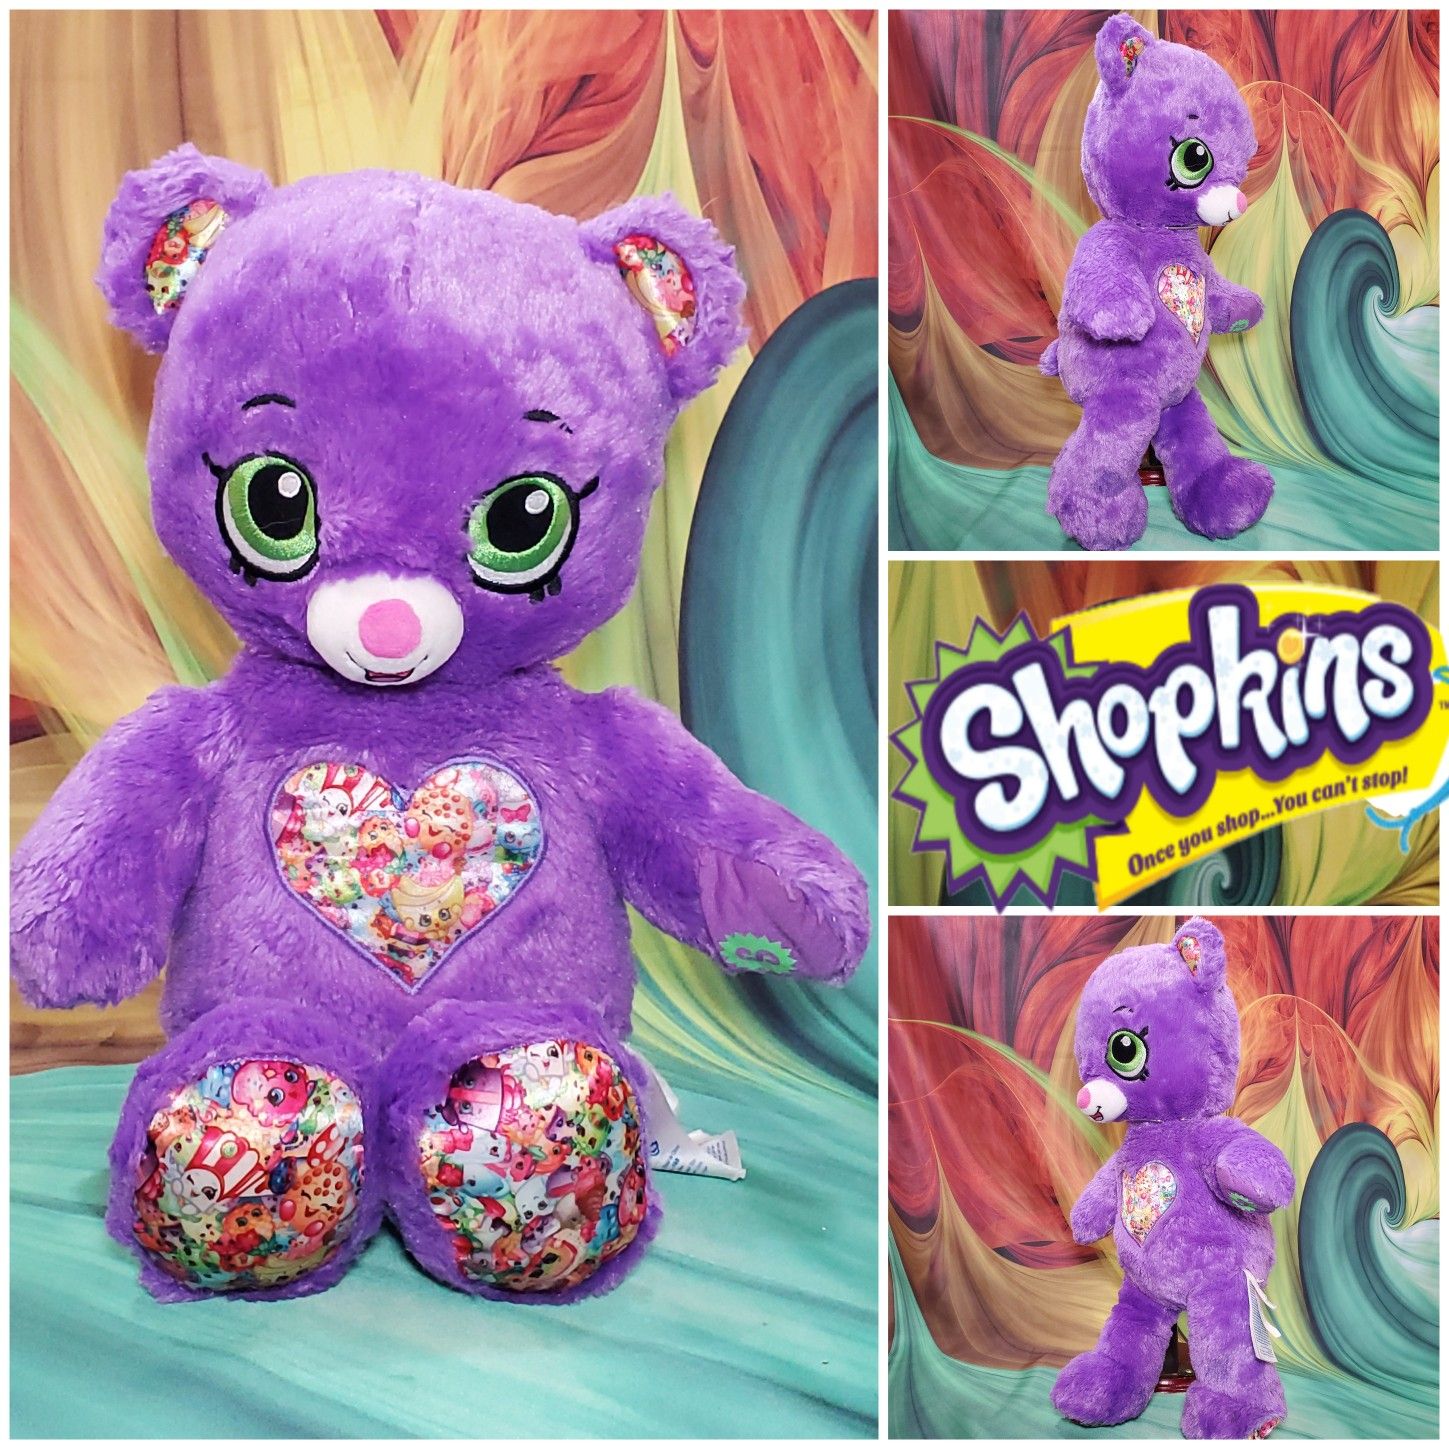 16" Build A Bear Purple Shopkins Teddy Plush Limited Edition BABW Stuffed Toy